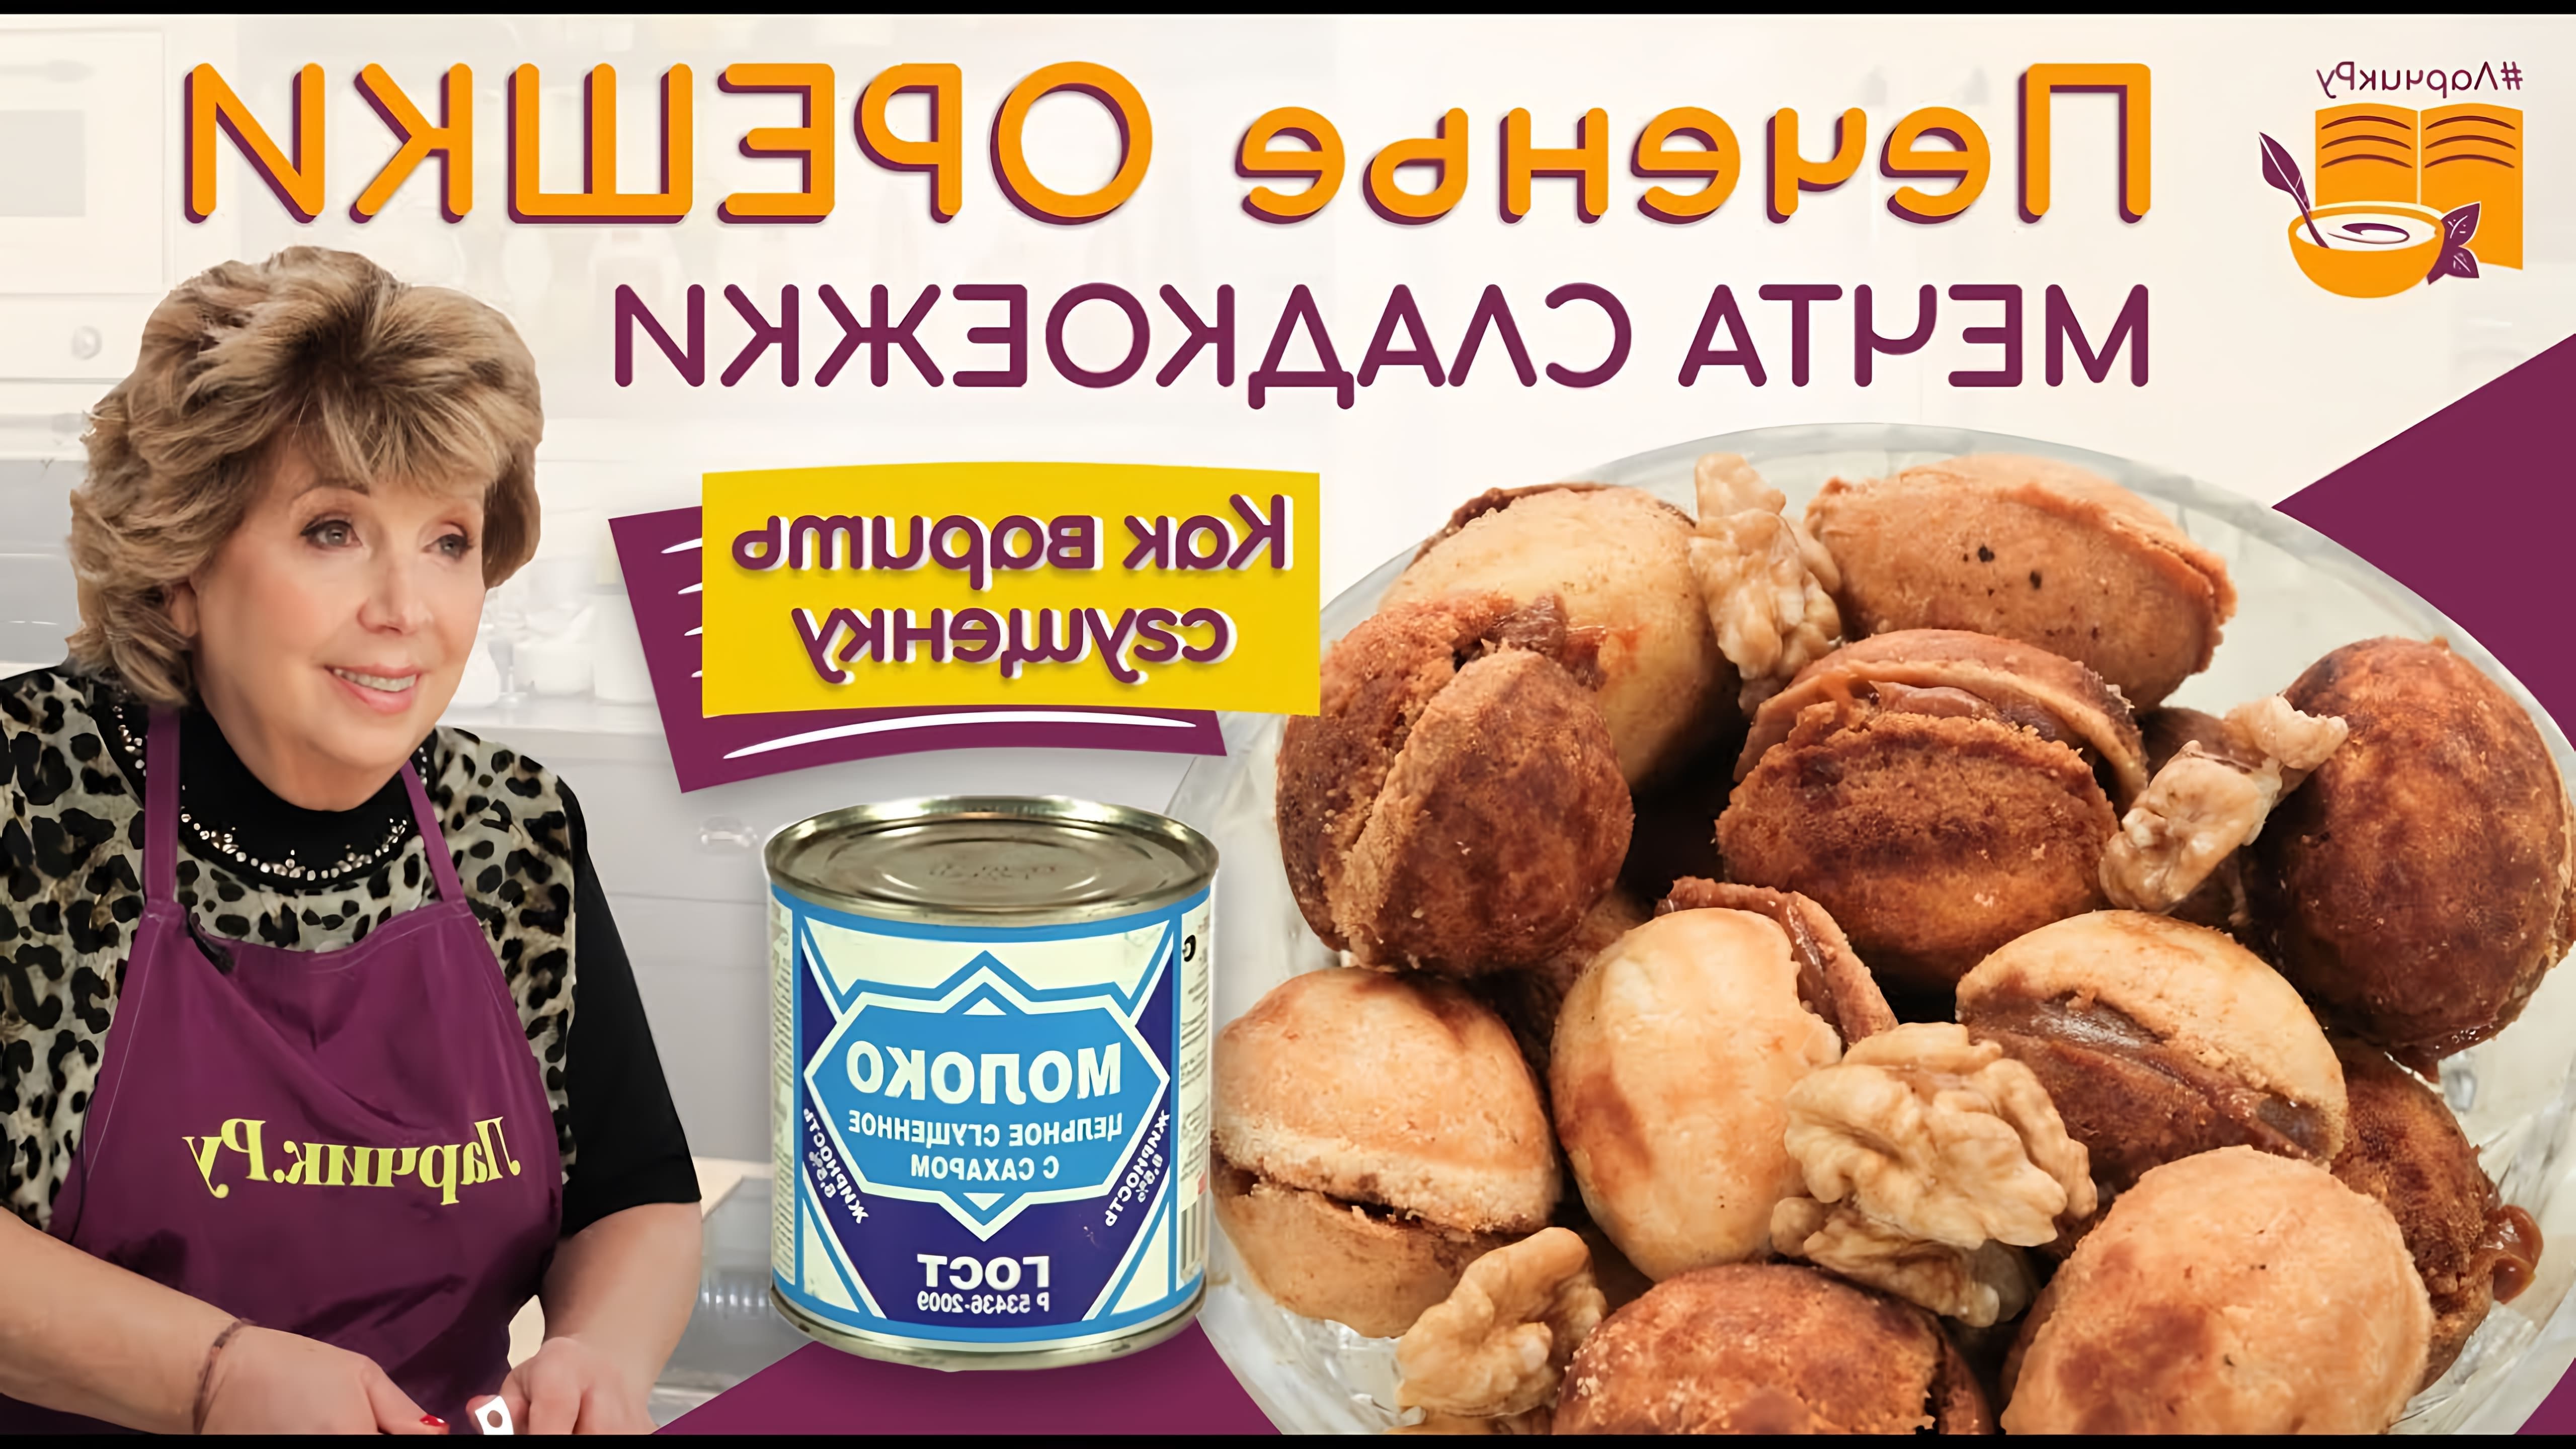 В этом видео рассказывается о приготовлении орешков со сгущенкой